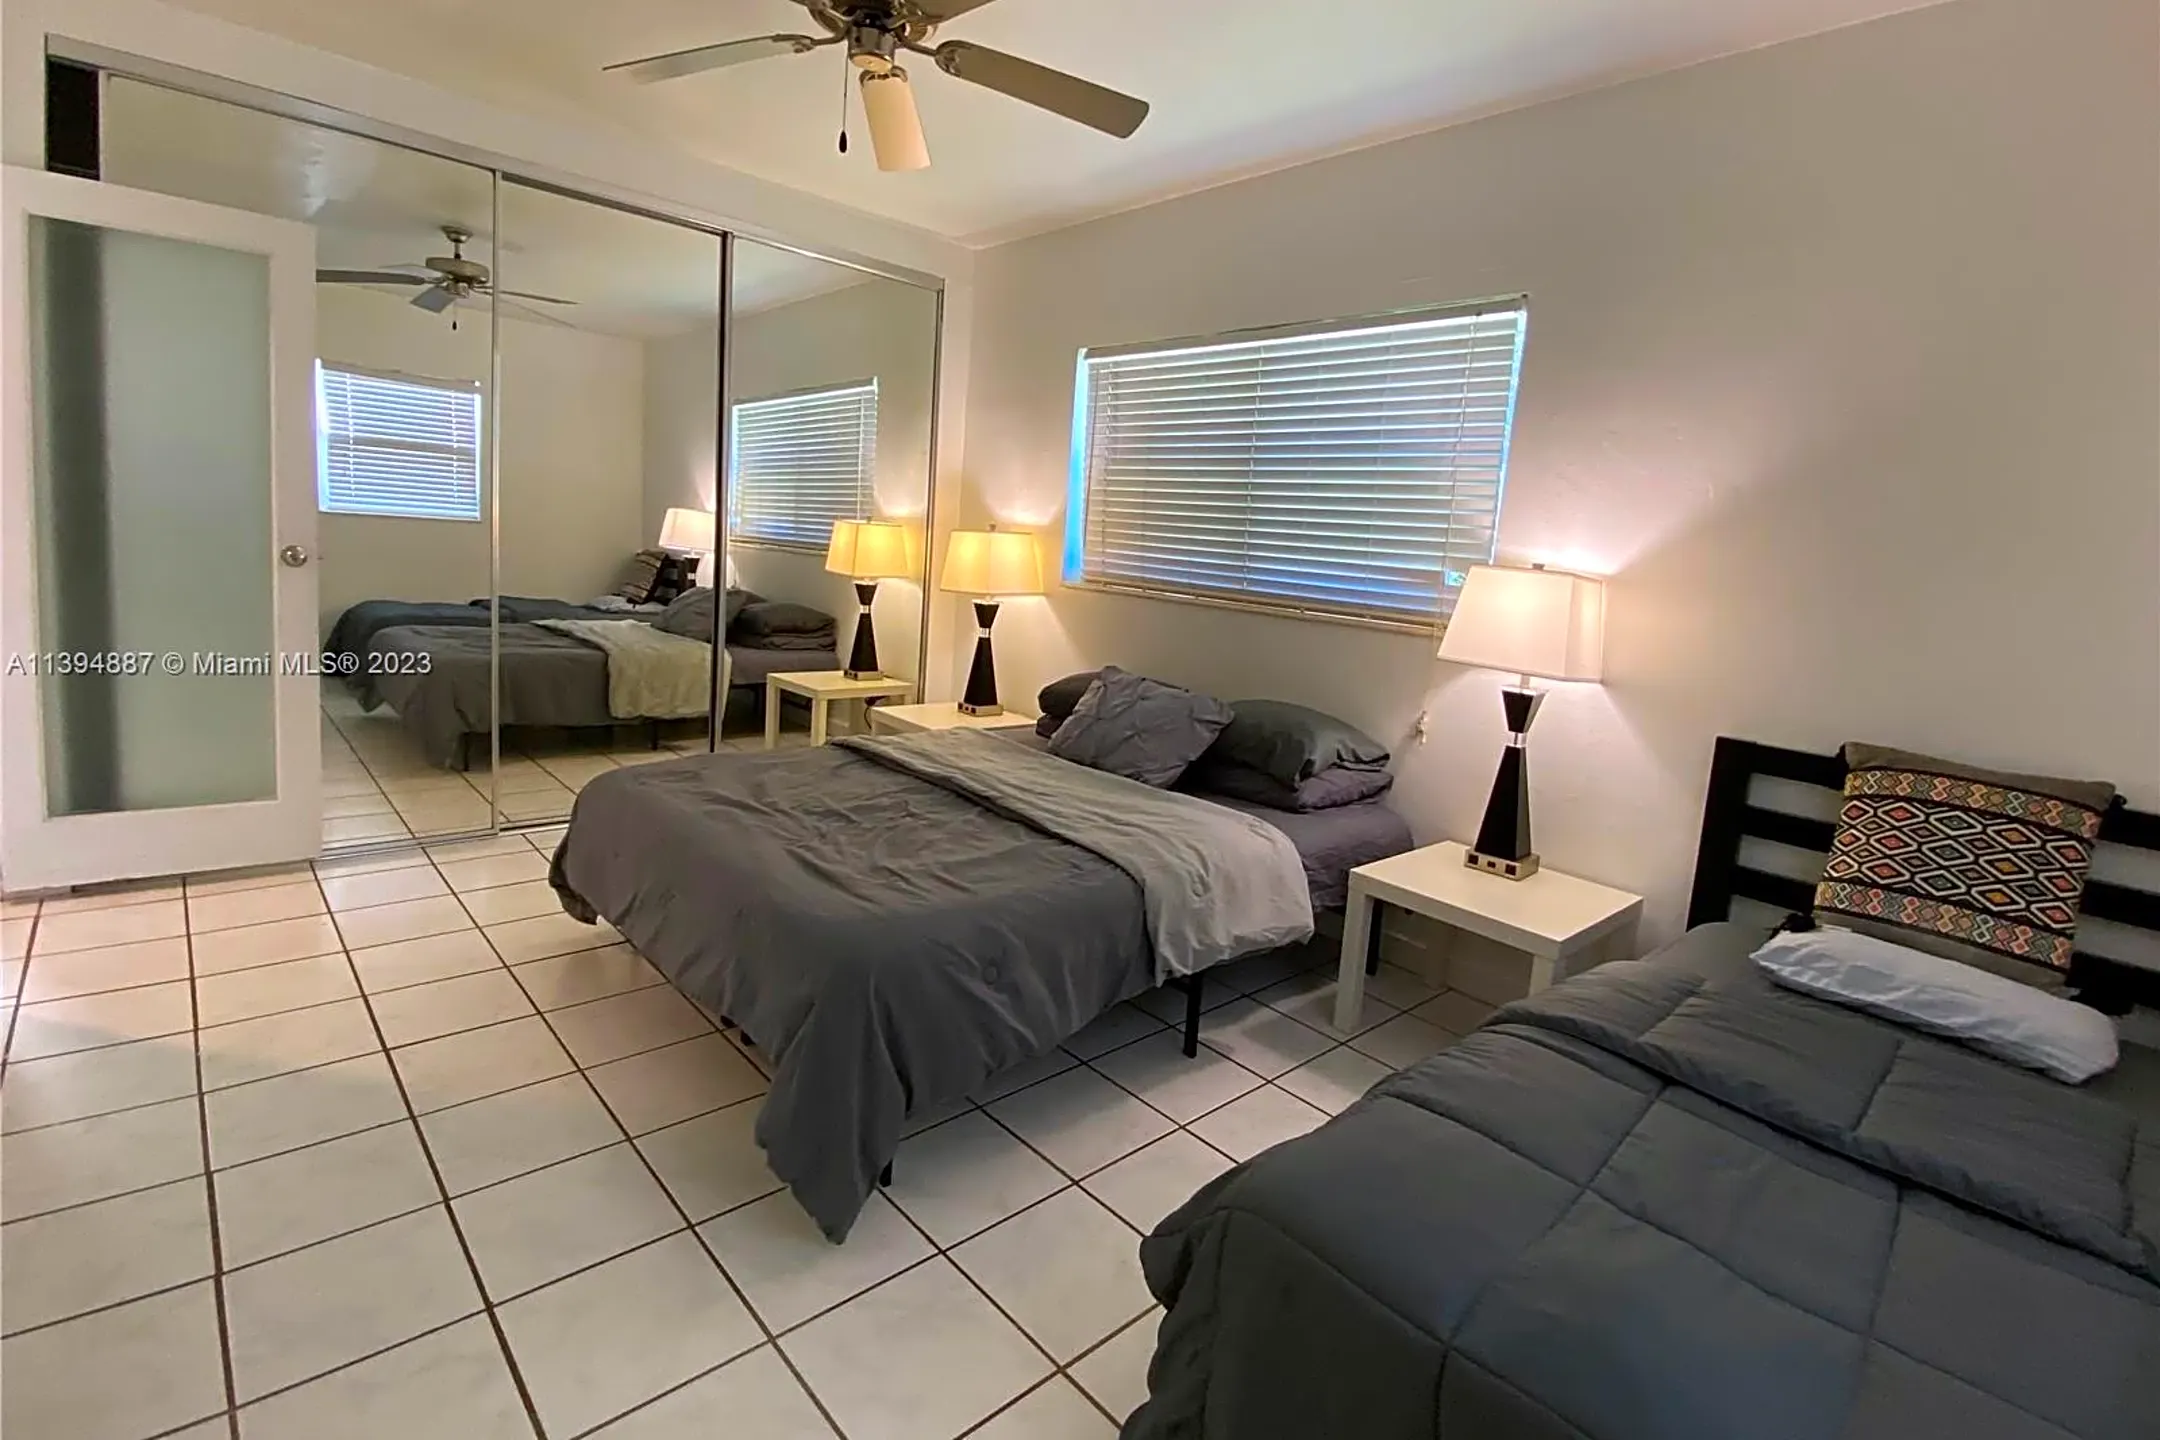 Bedroom - 910 NE 81st St #910 - Miami, FL